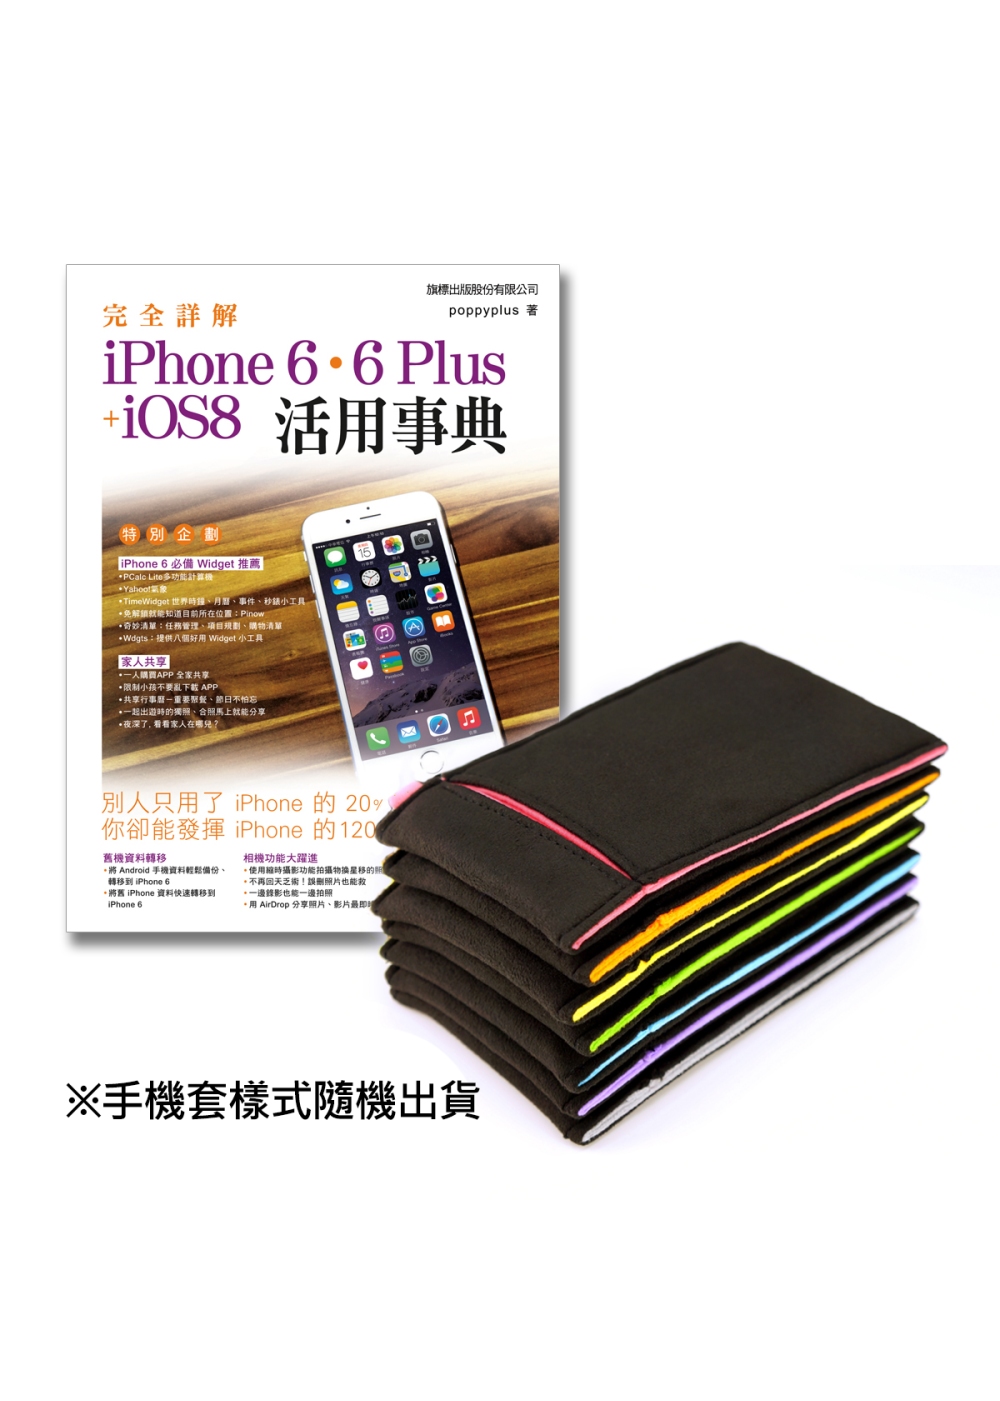 iPhone 6 活用書 + 網路熱銷 Onor 可擦拭手機套限量組合